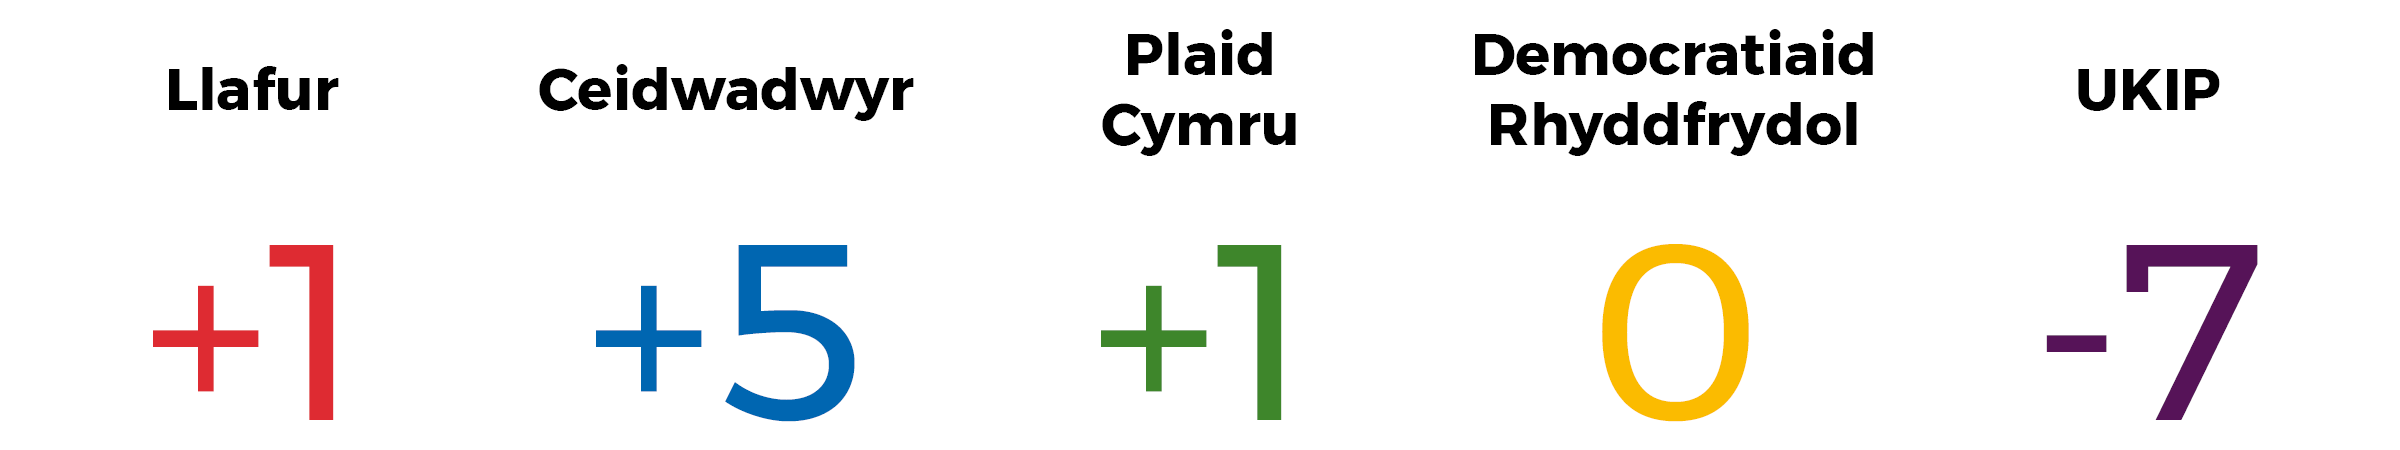 Delwedd sy’n dangos y newid mewn seddi. Llafur +1, Ceidwadwyr +5, Plaid Cymru +1, y Democratiaid Rhyddfrydol dim newid, UKIP -7.